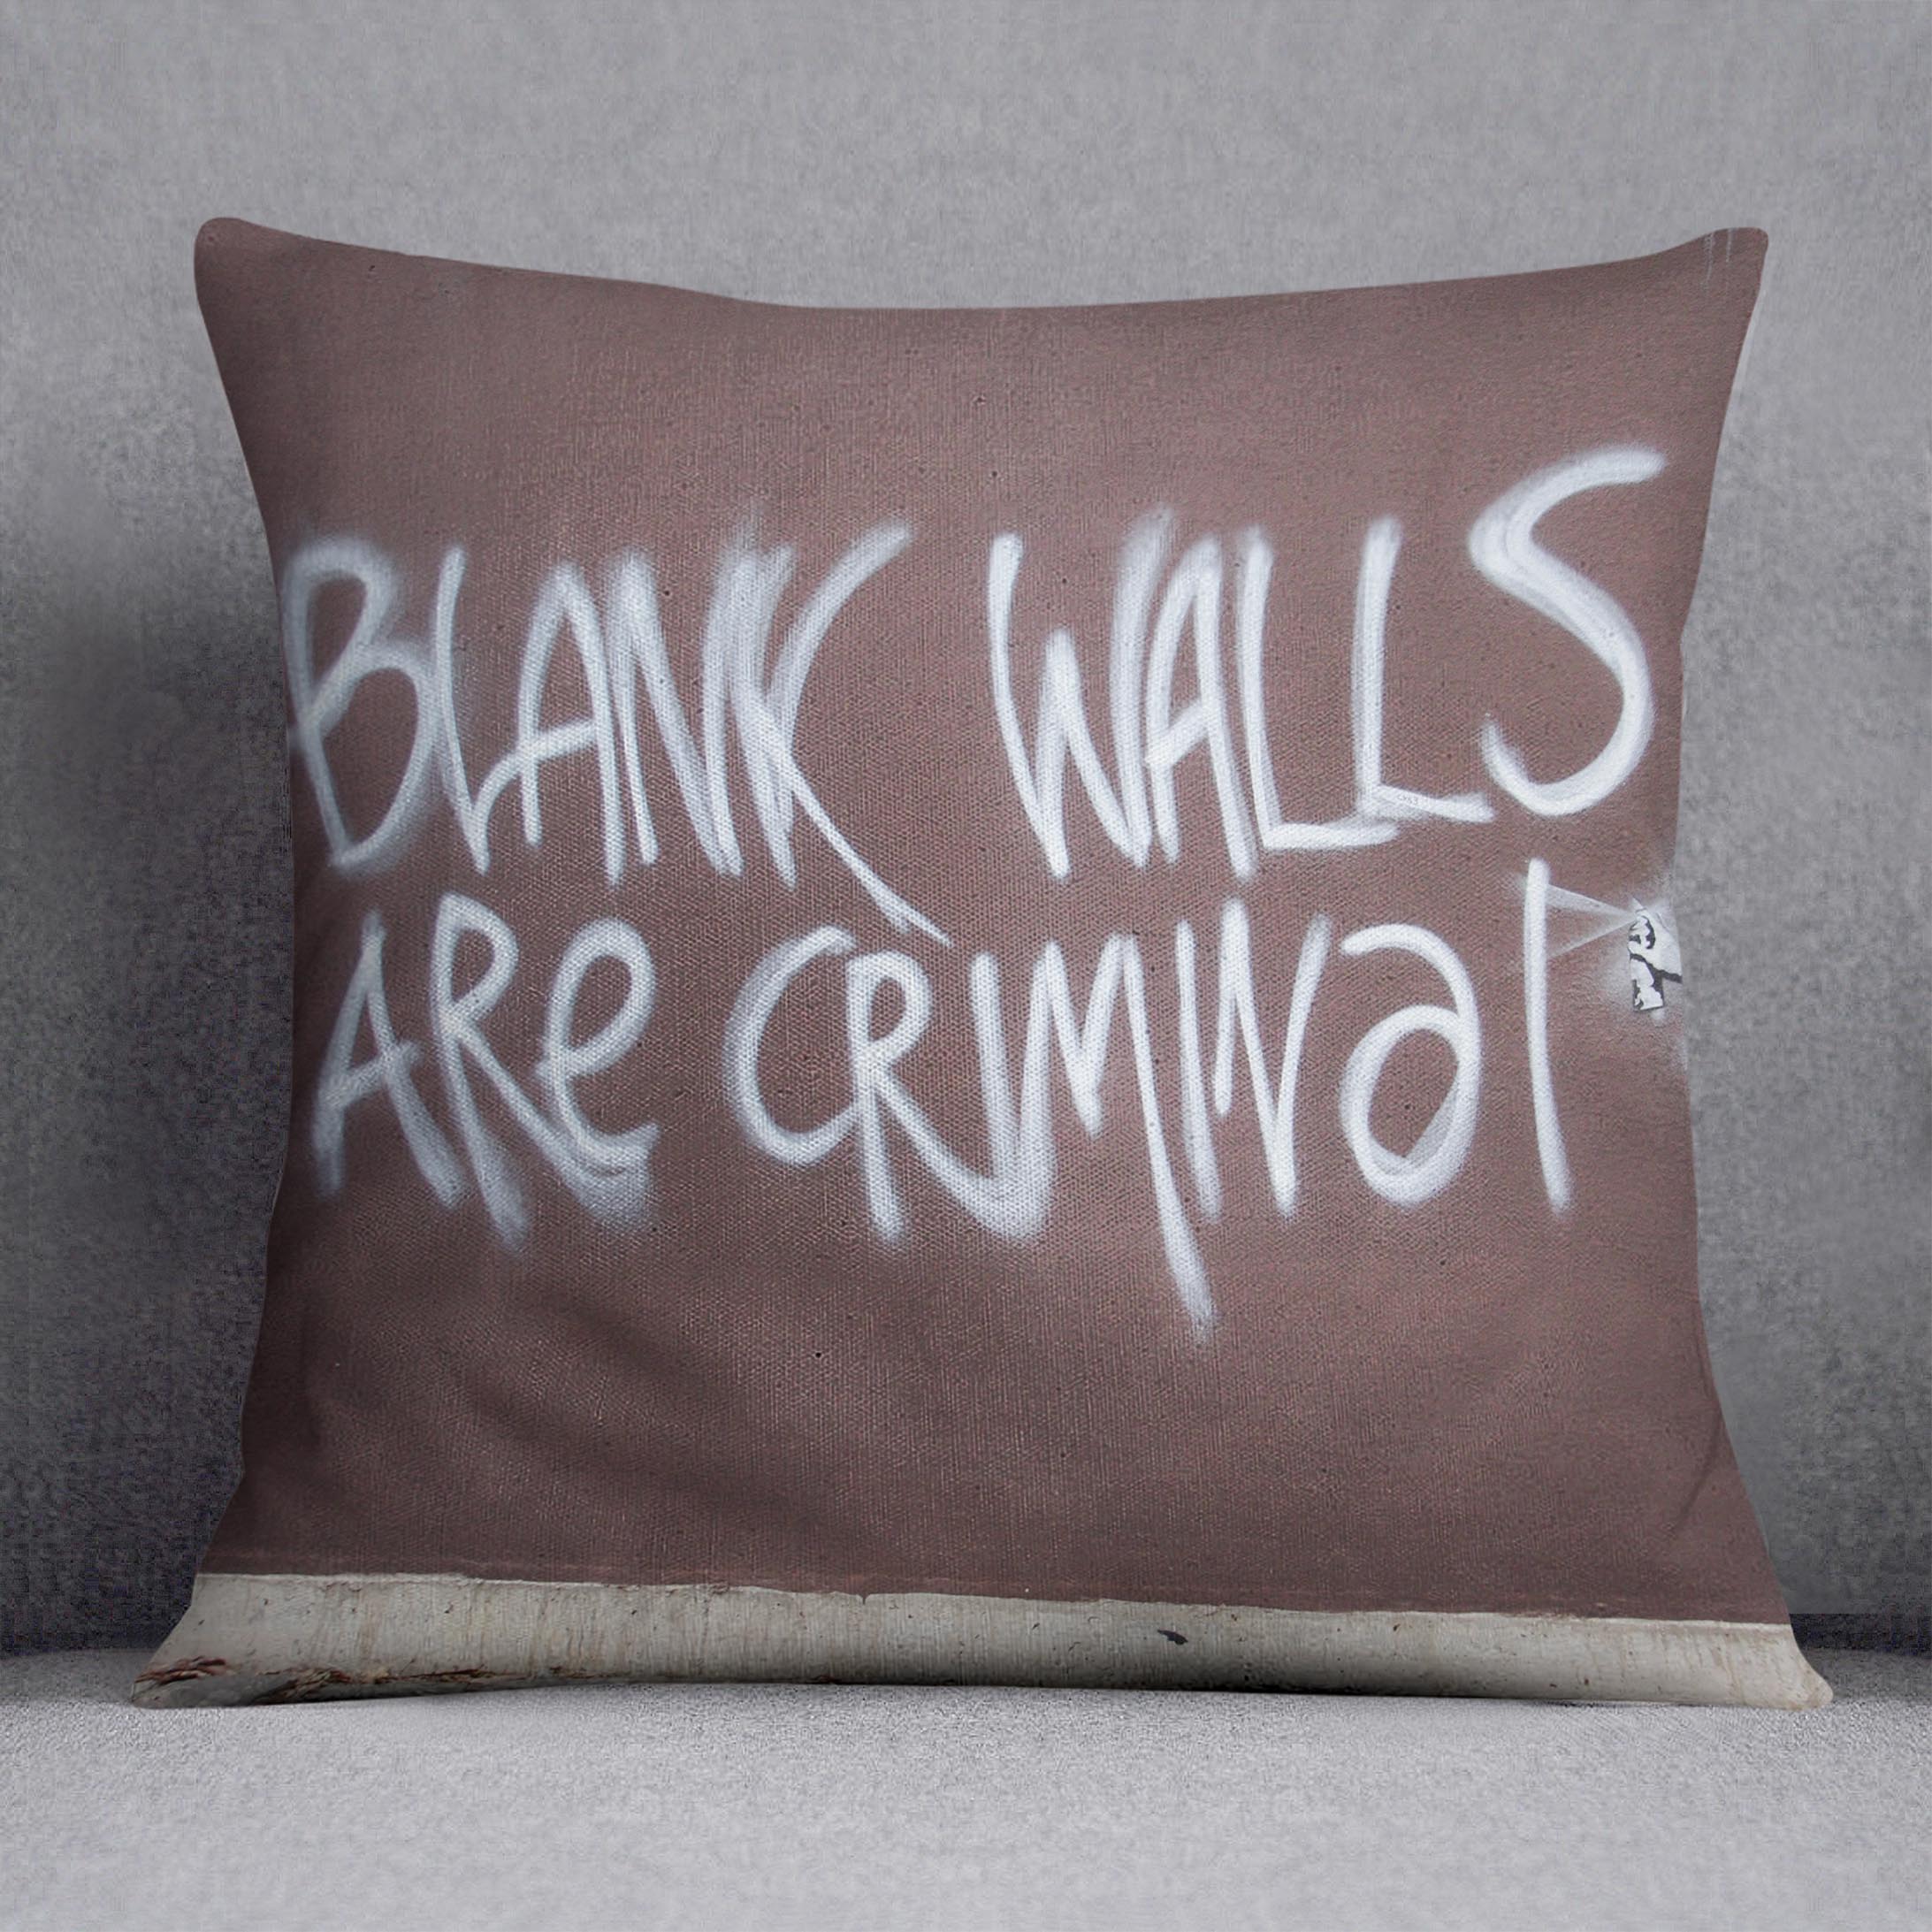 Banksy Blank Walls Are Criminal Cushion